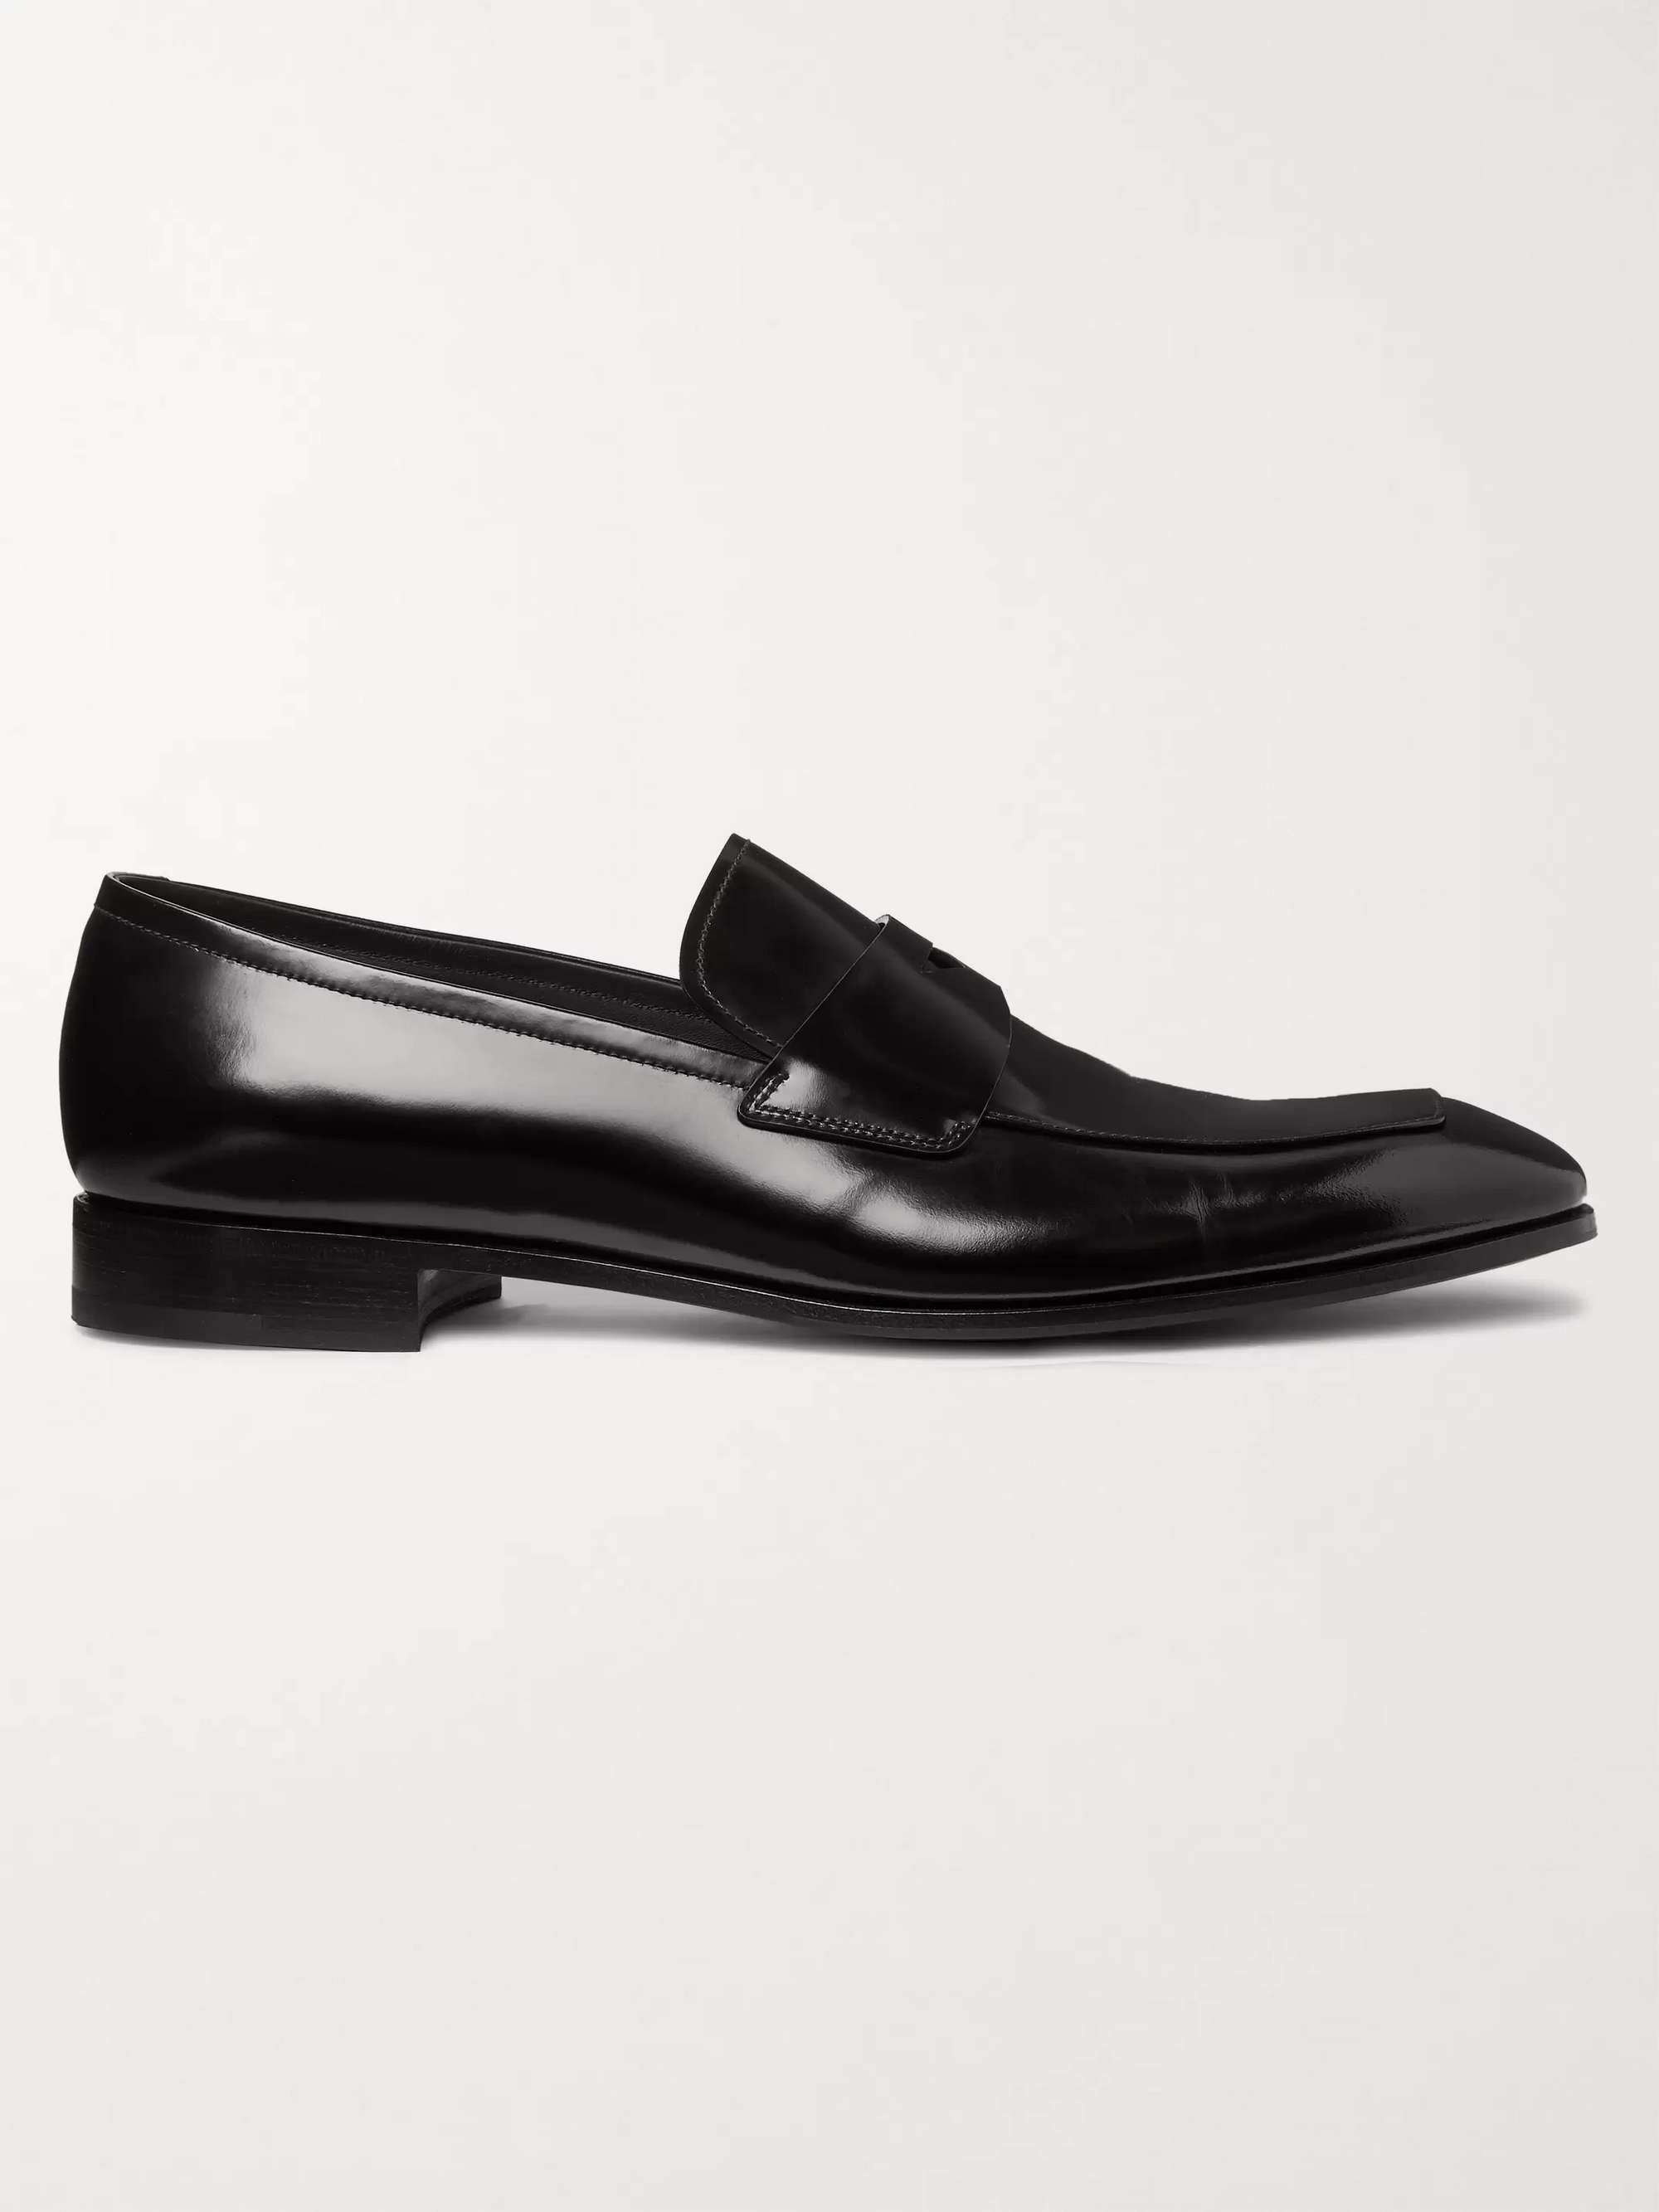 Black Polished-Leather Penny Loafers | PRADA | MR PORTER